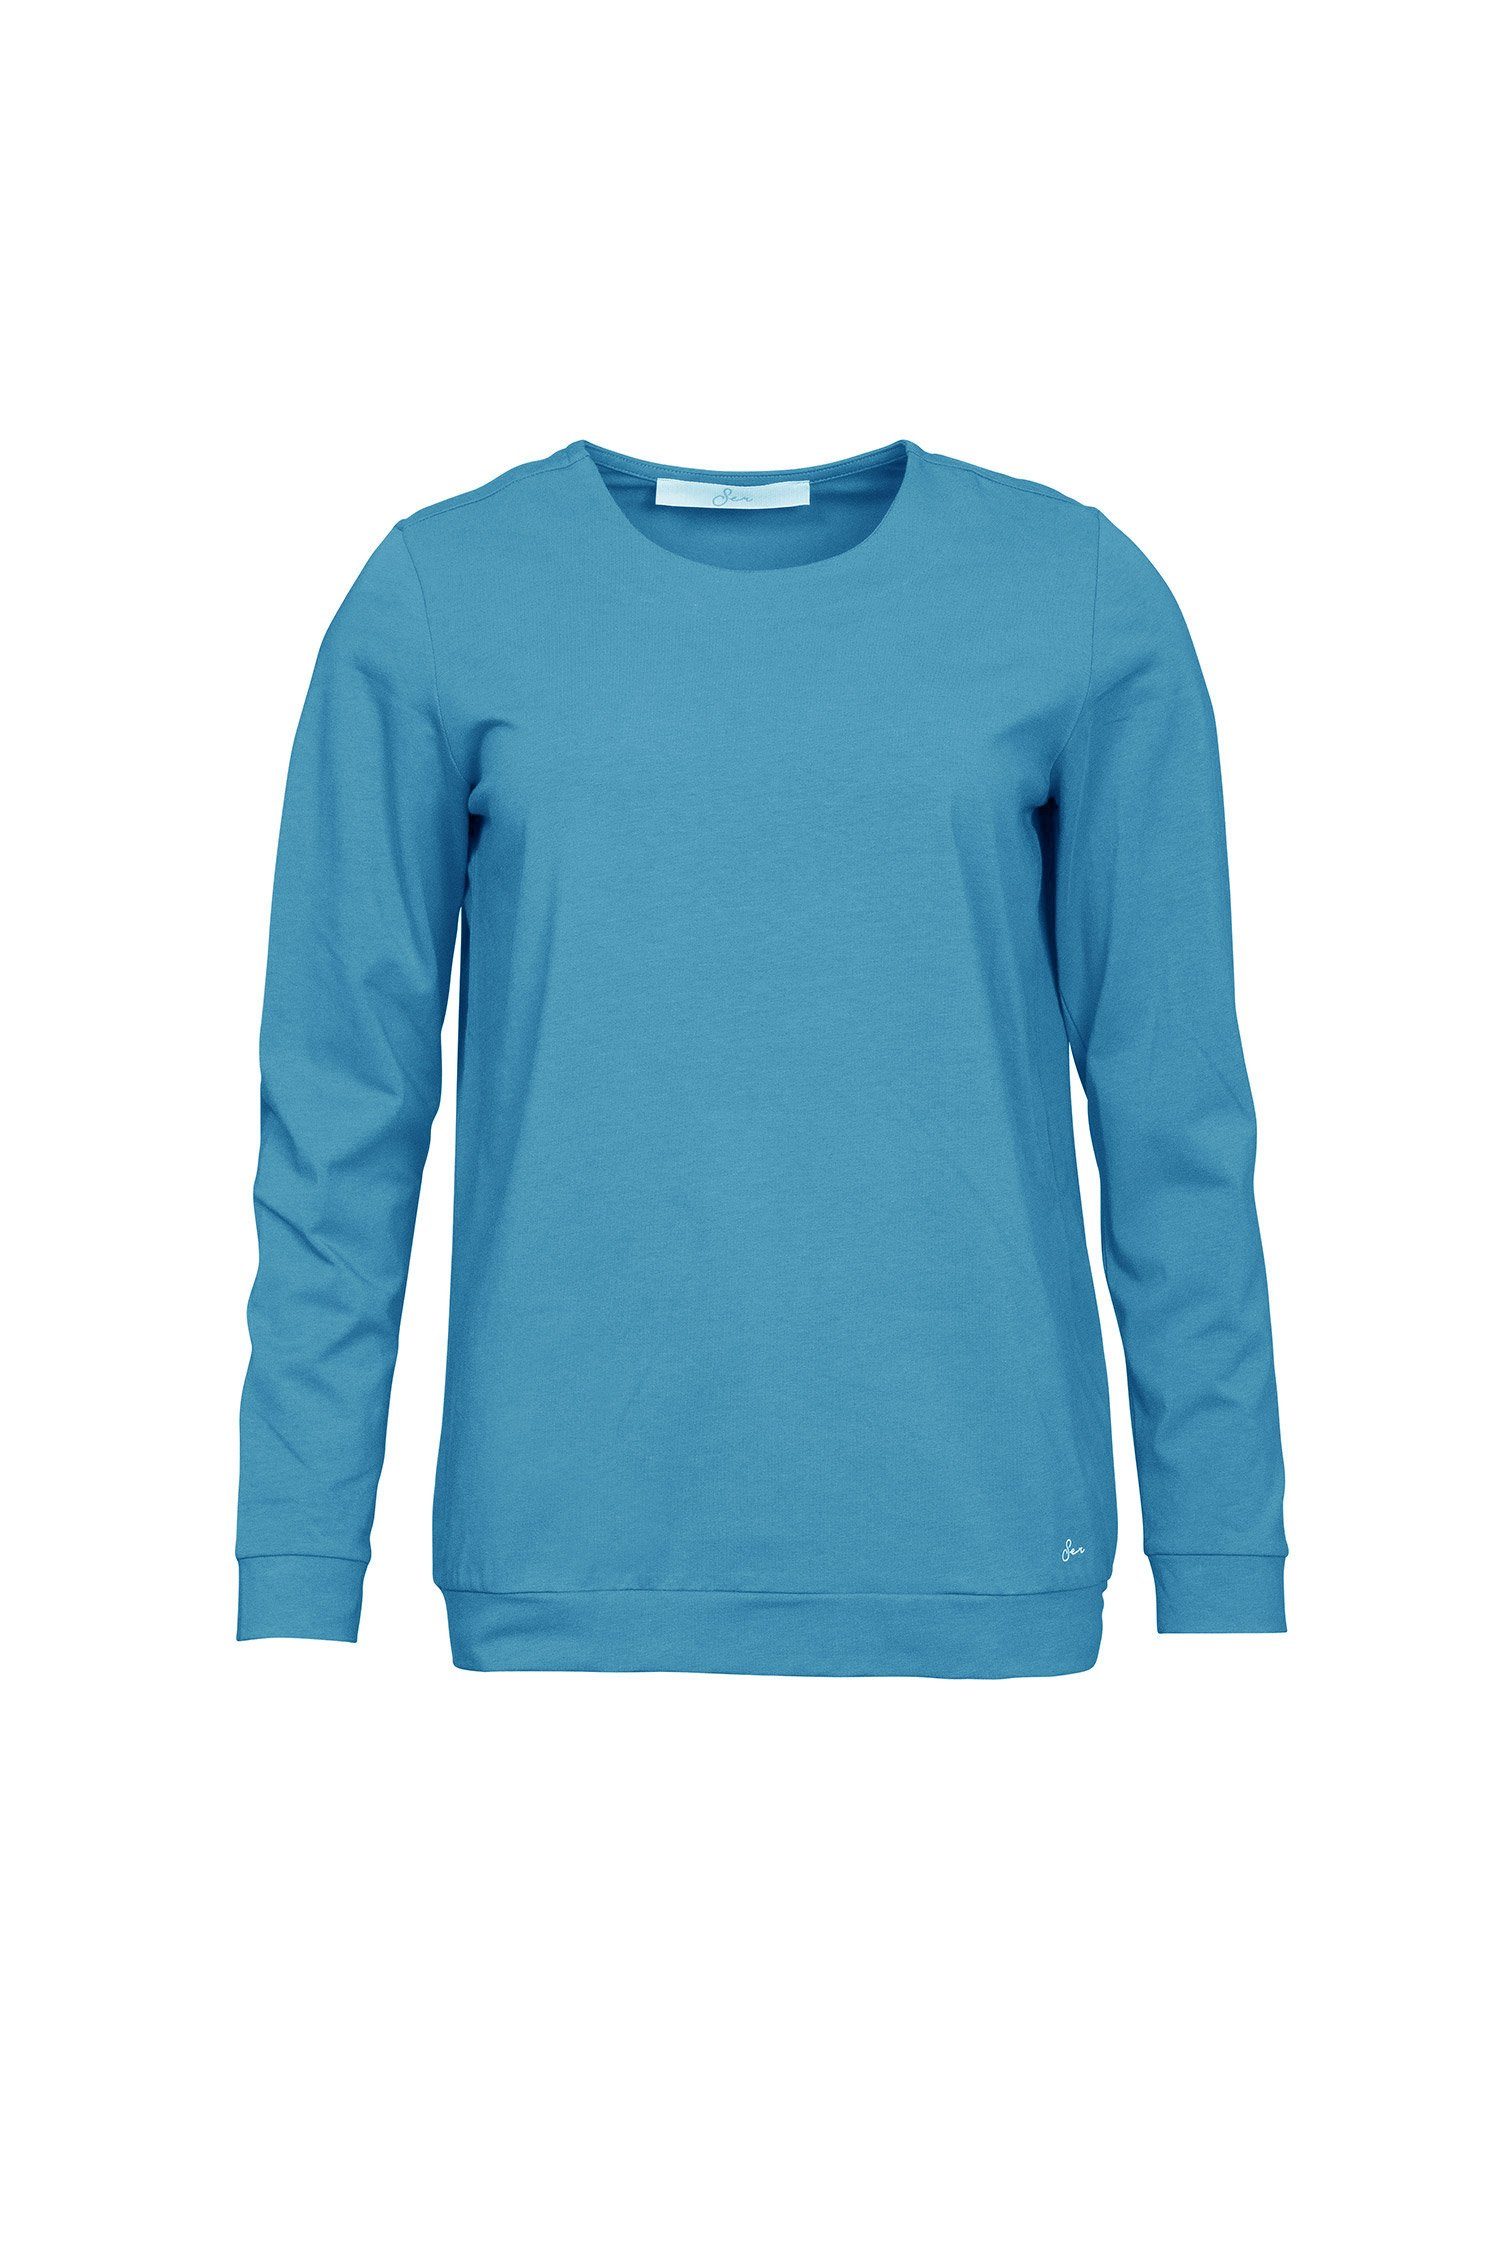 SER Langarmshirt Shirt Rundhals einfarbig W9923101W auch in großen Größen 458 jeans melange